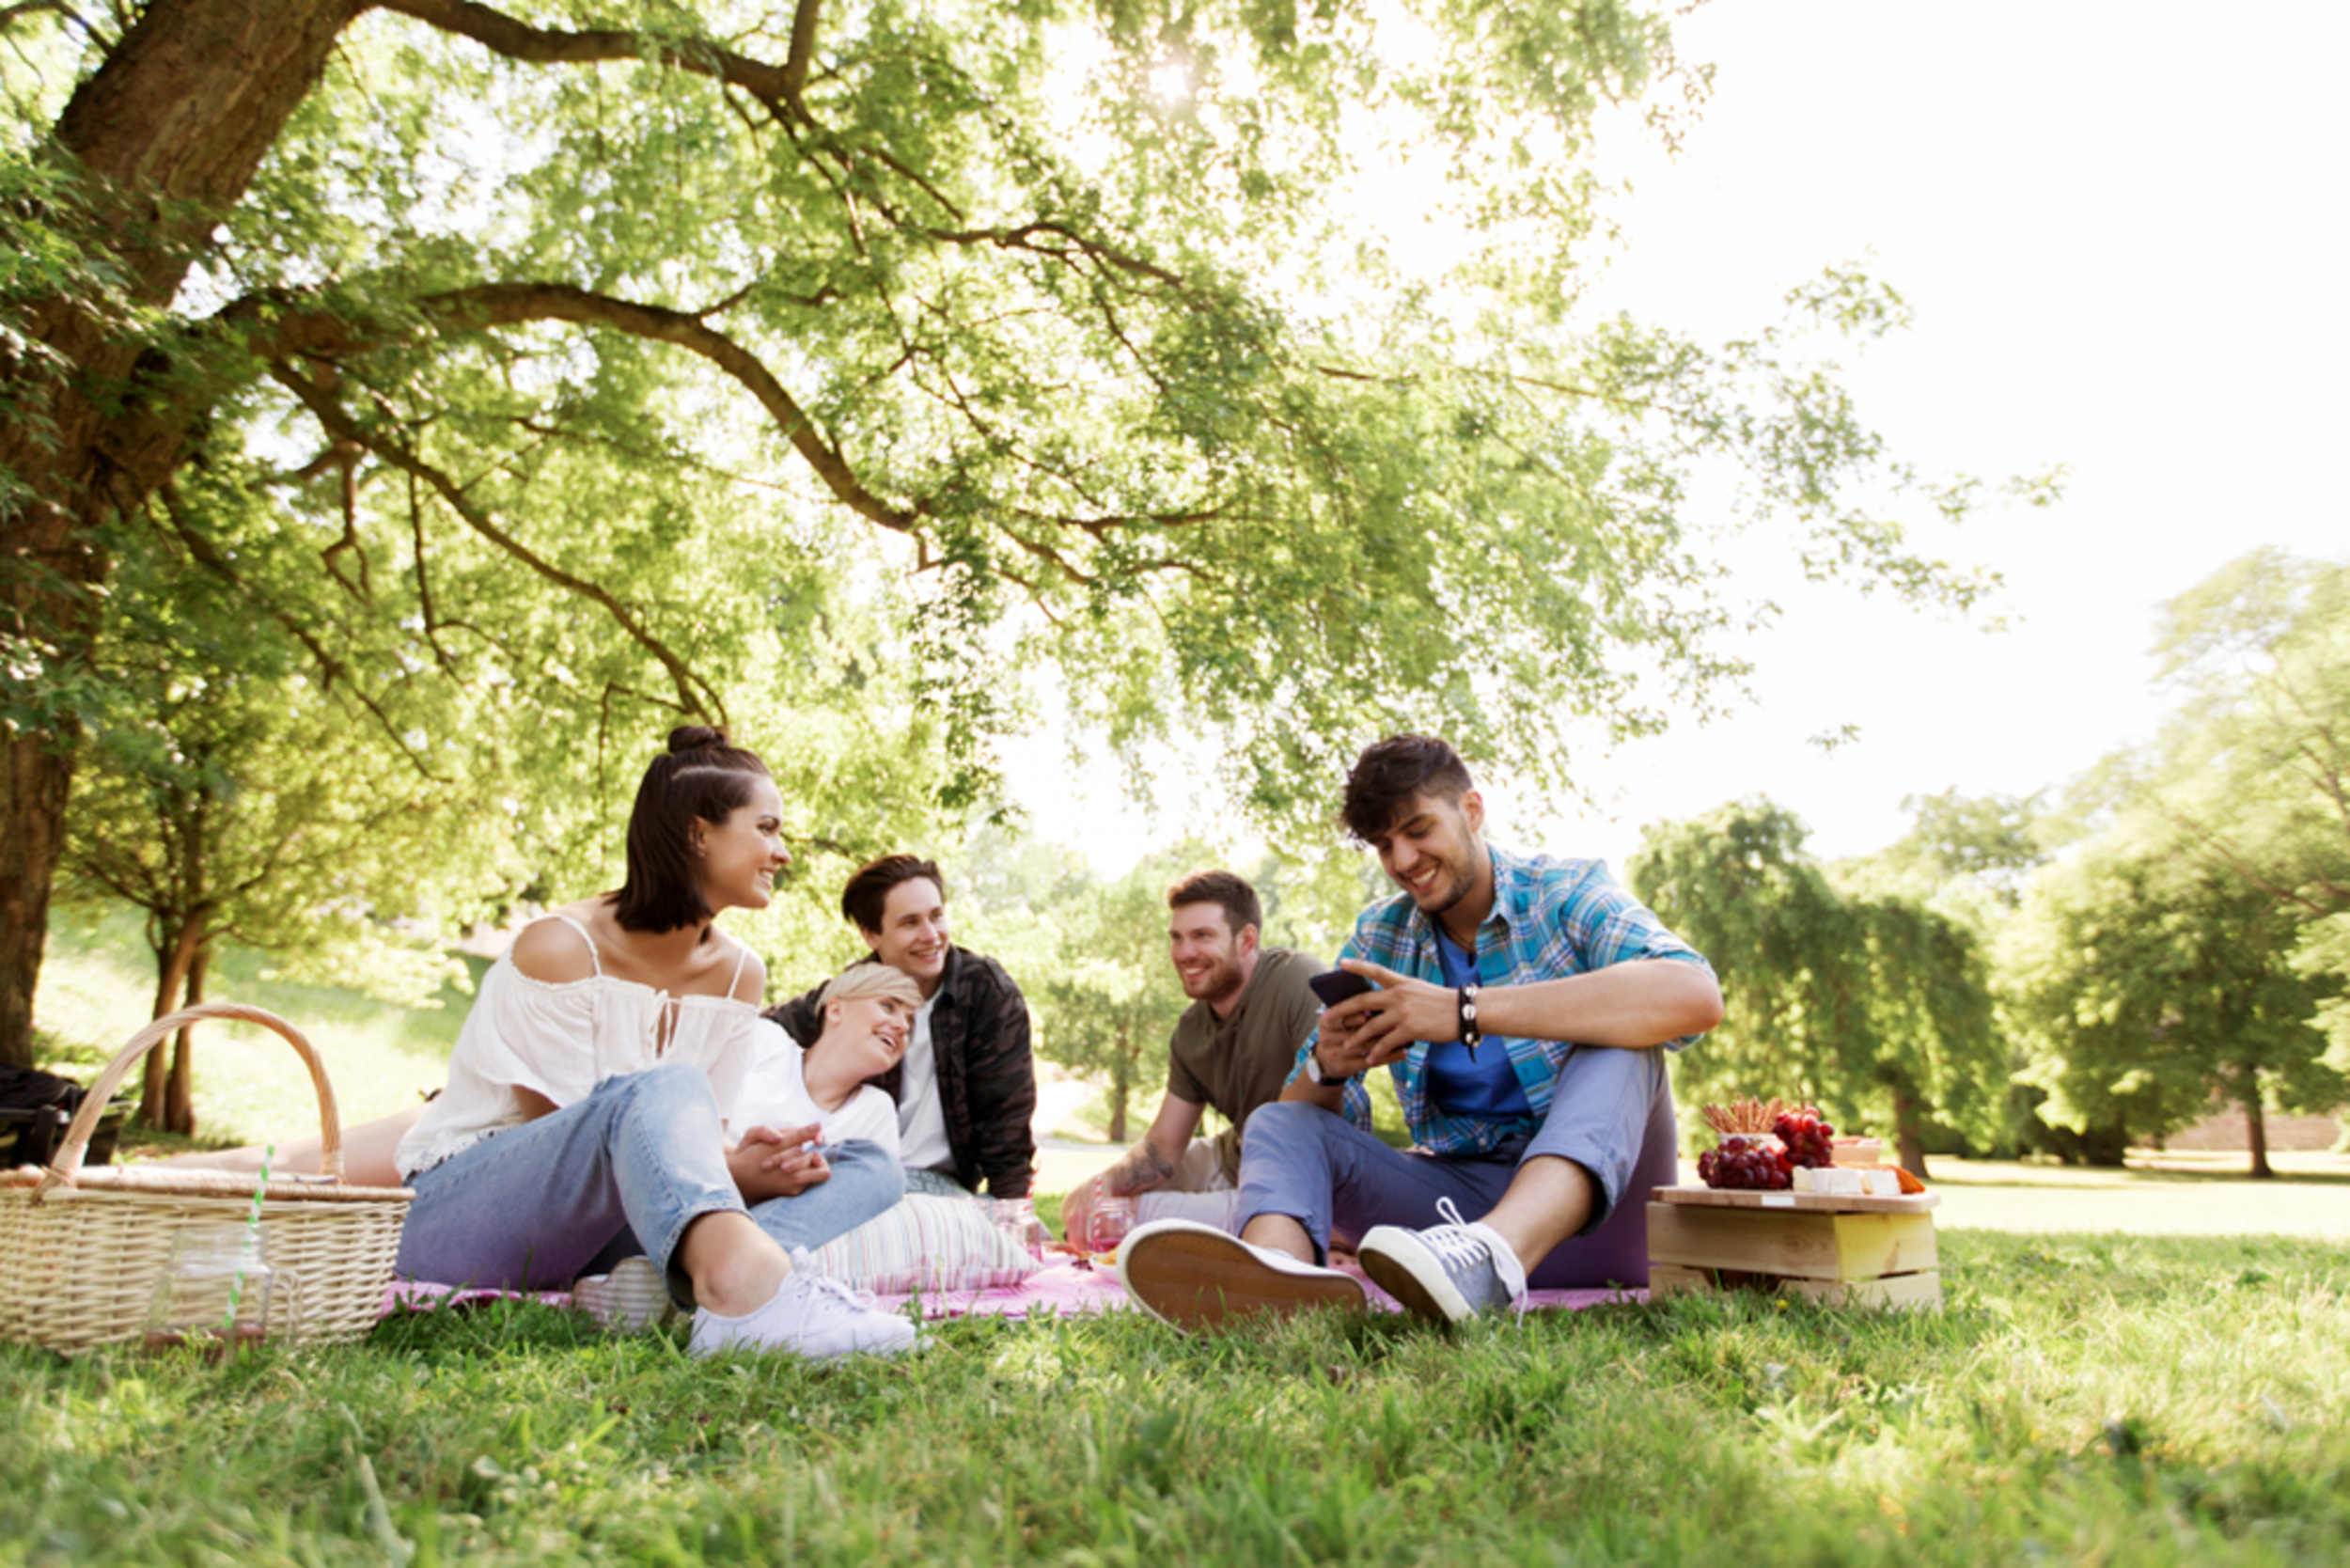 Пикник одноклассники. Пикник с друзьями. Люди на пикнике в парке. Дружеский пикник на природе. Молодые люди в парке на пикнике.